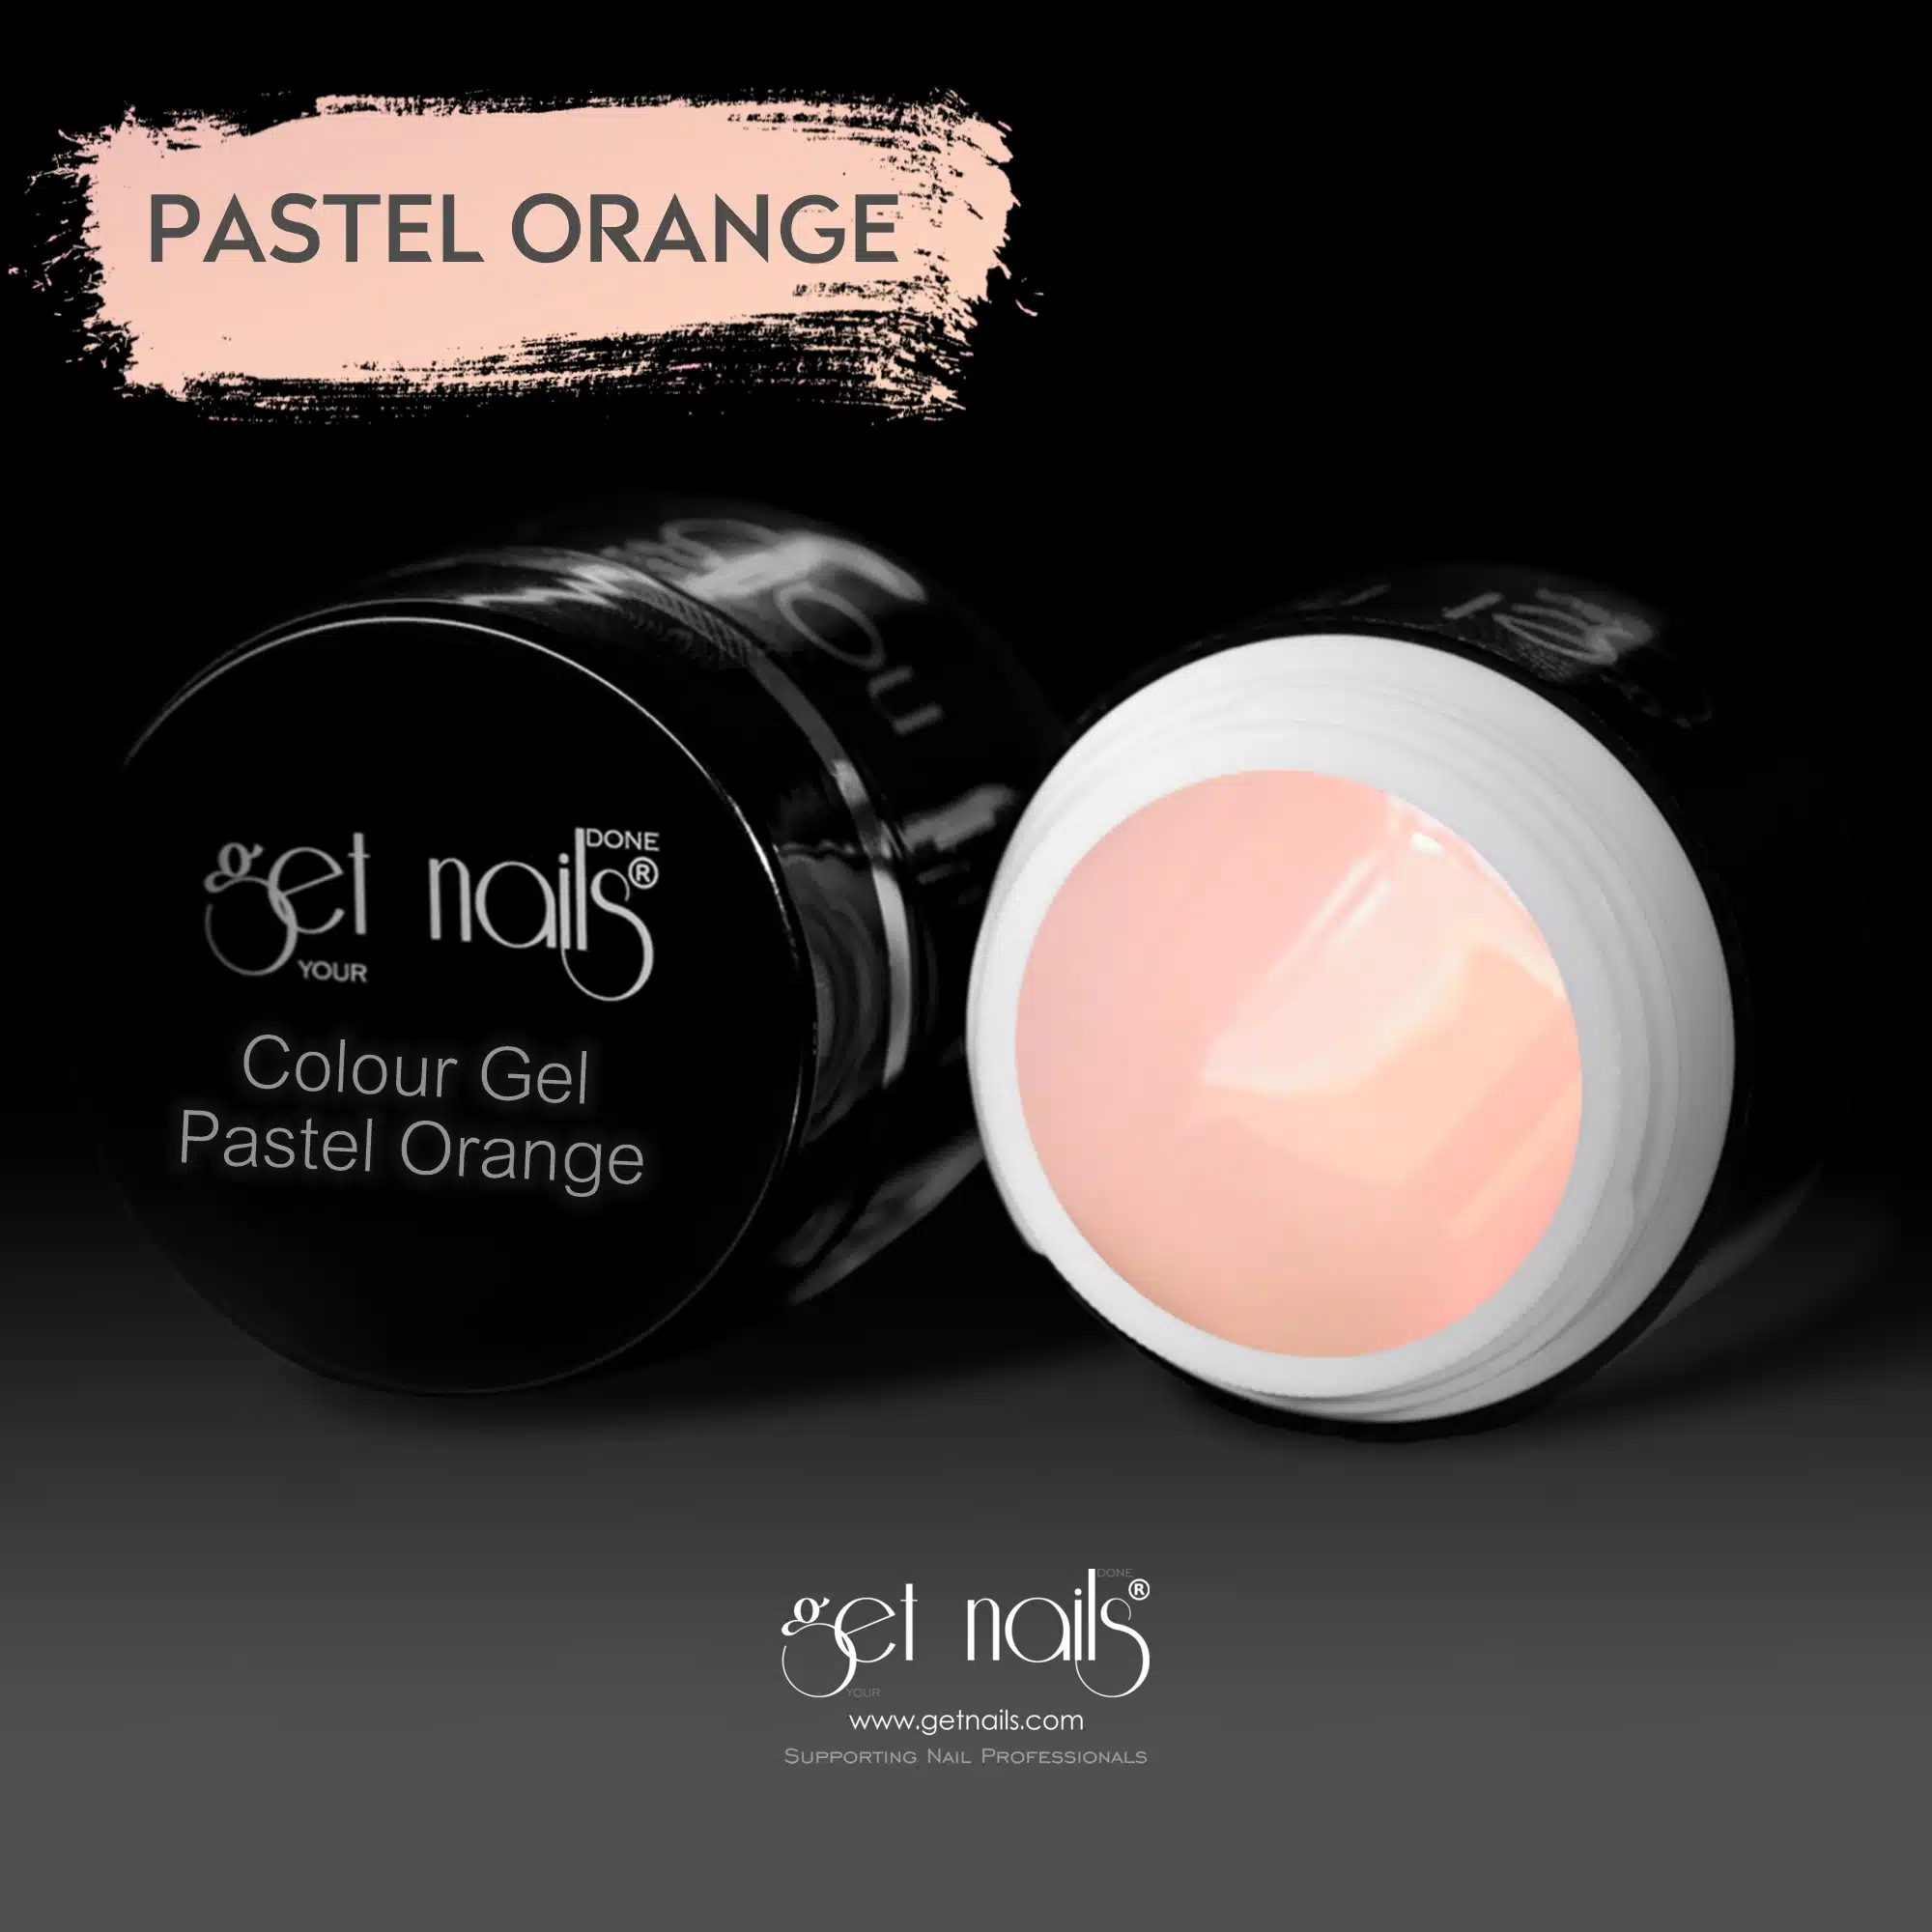 Get Nails Austria - Color Gel Pasztell Orange 5g